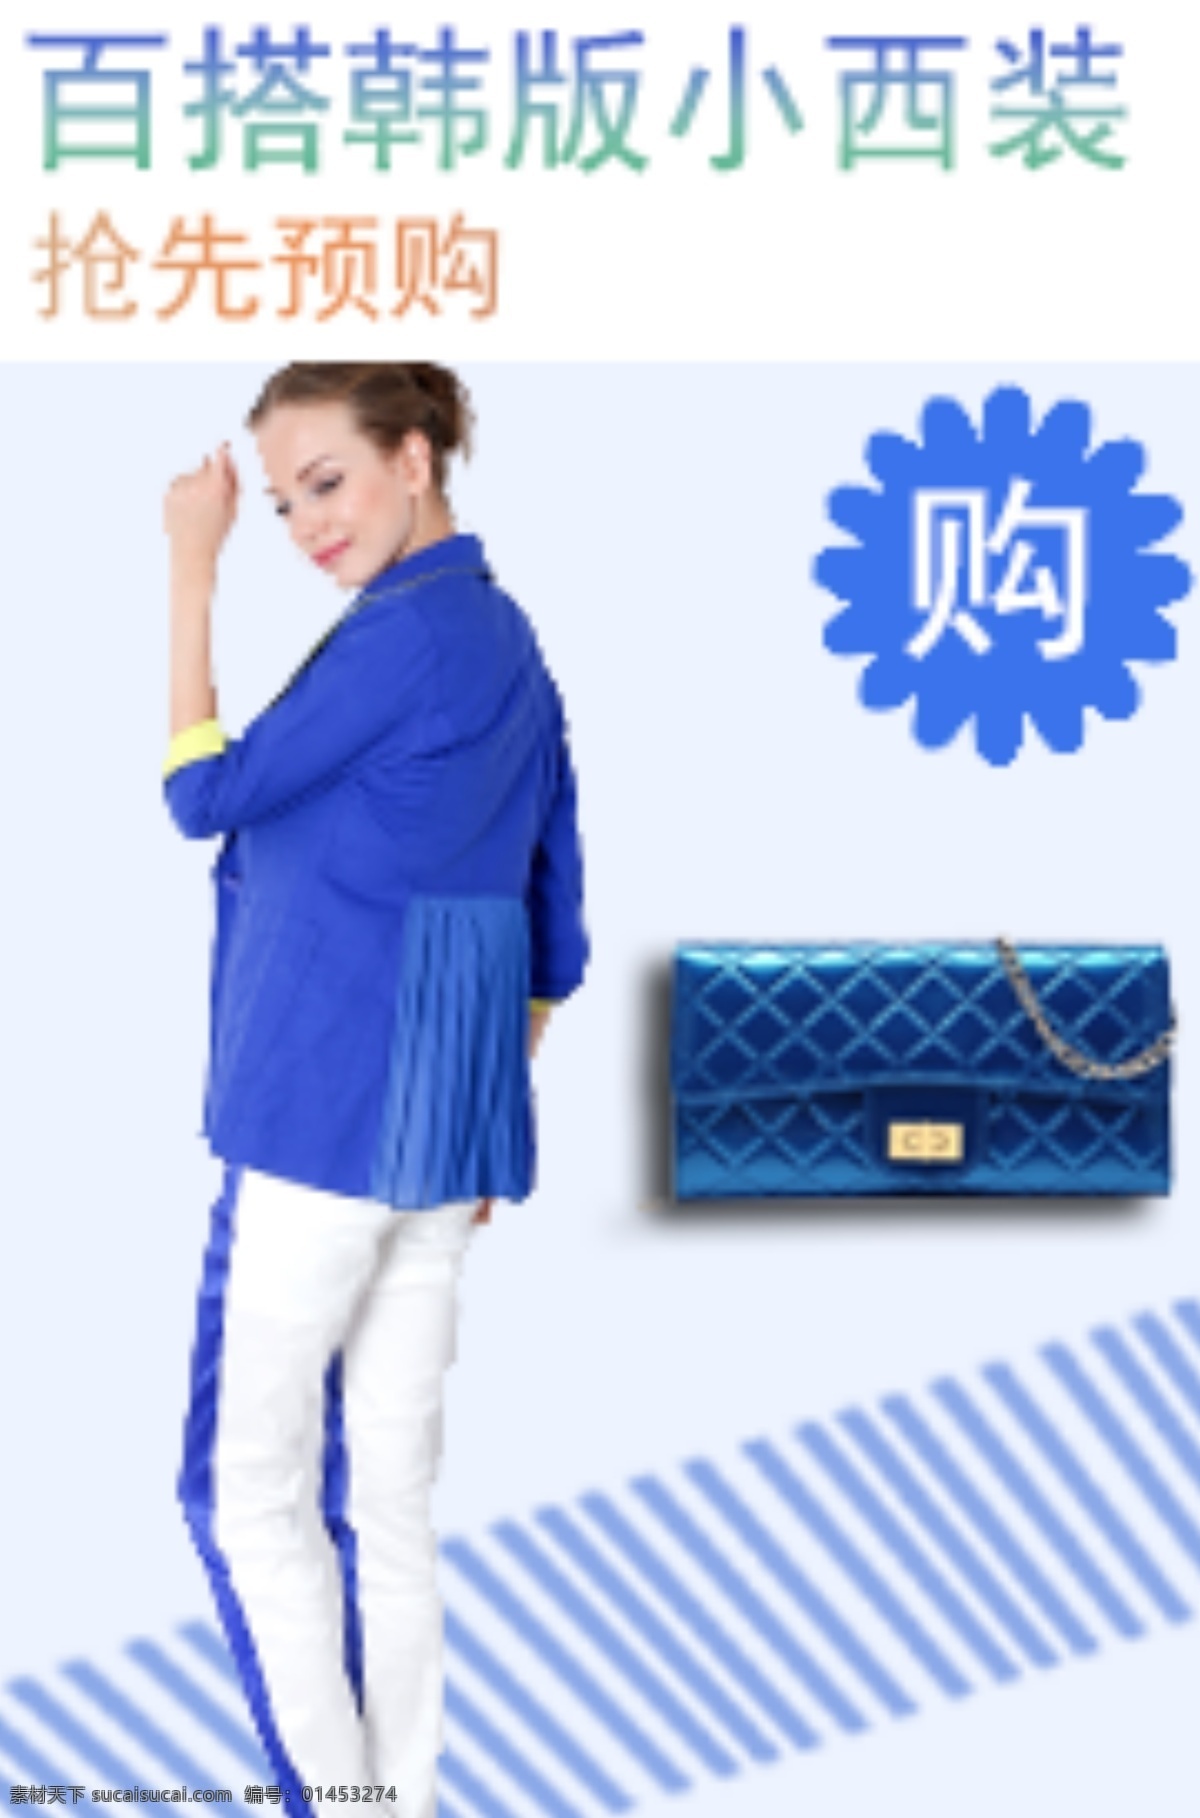 蓝色 西服 包包 宣传海报 促销 宣传 原创 同色系 原创设计 原创淘宝设计